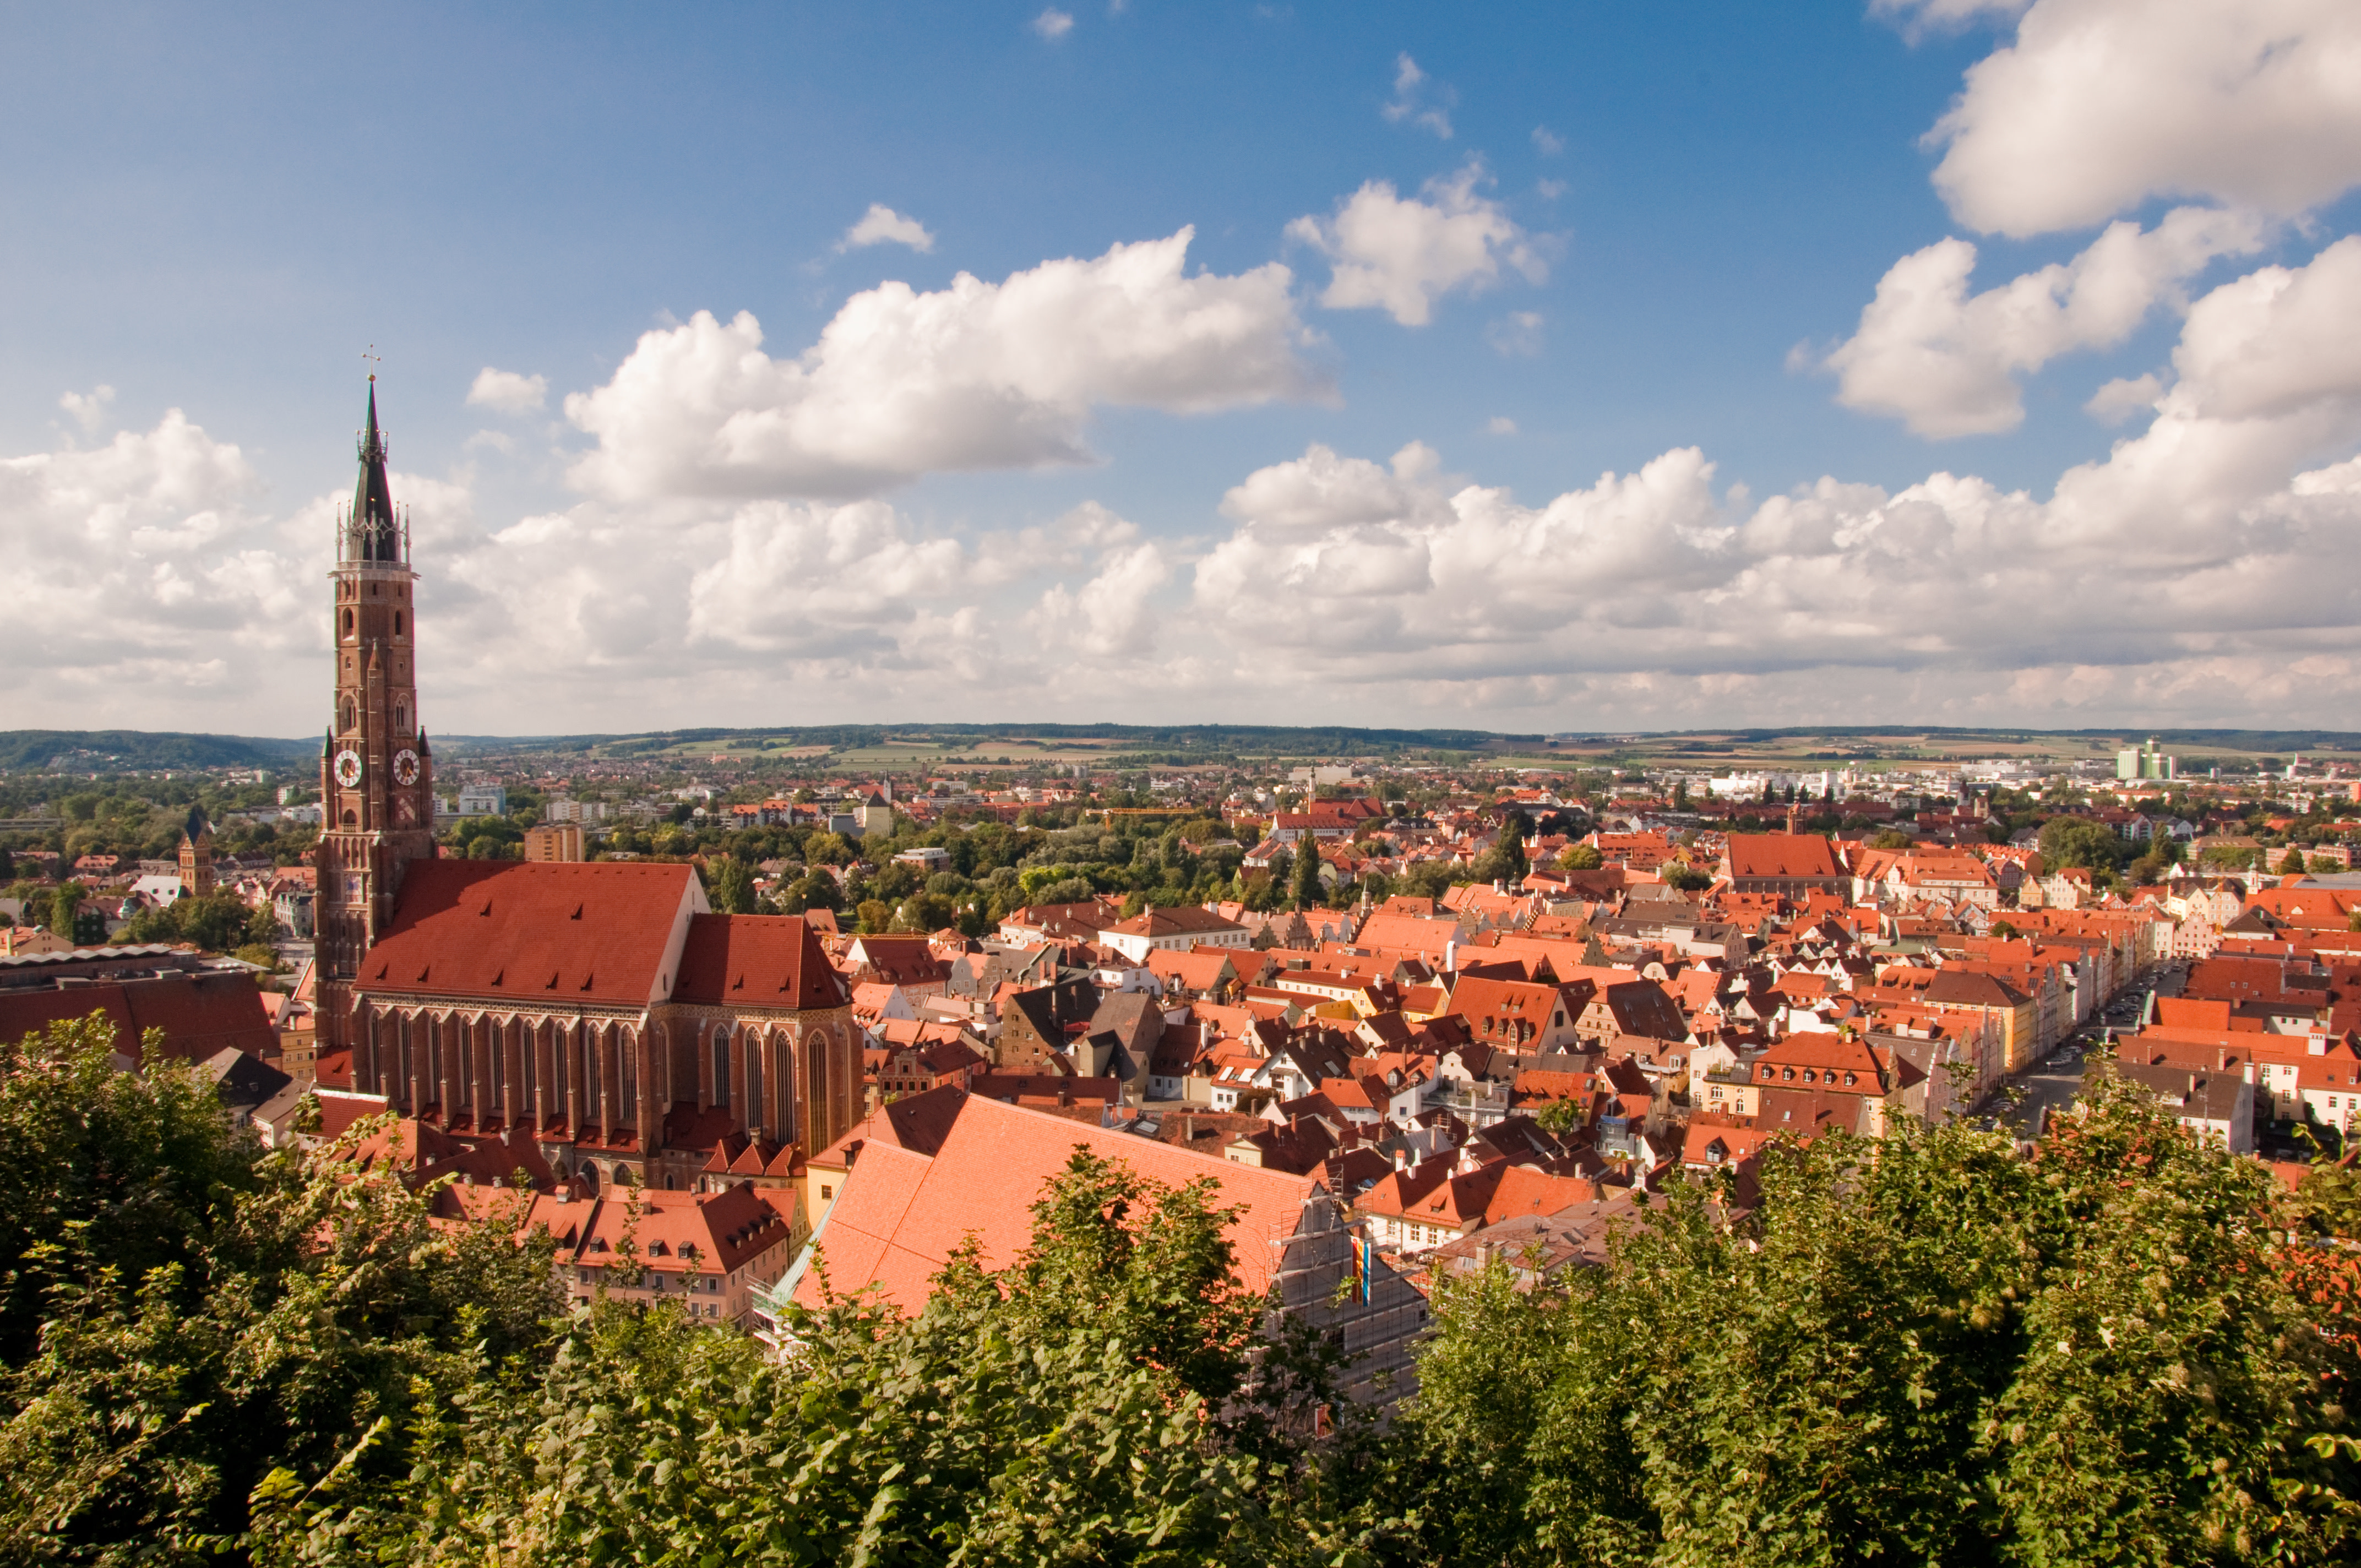 Ansicht der Stadt Landshut von oben